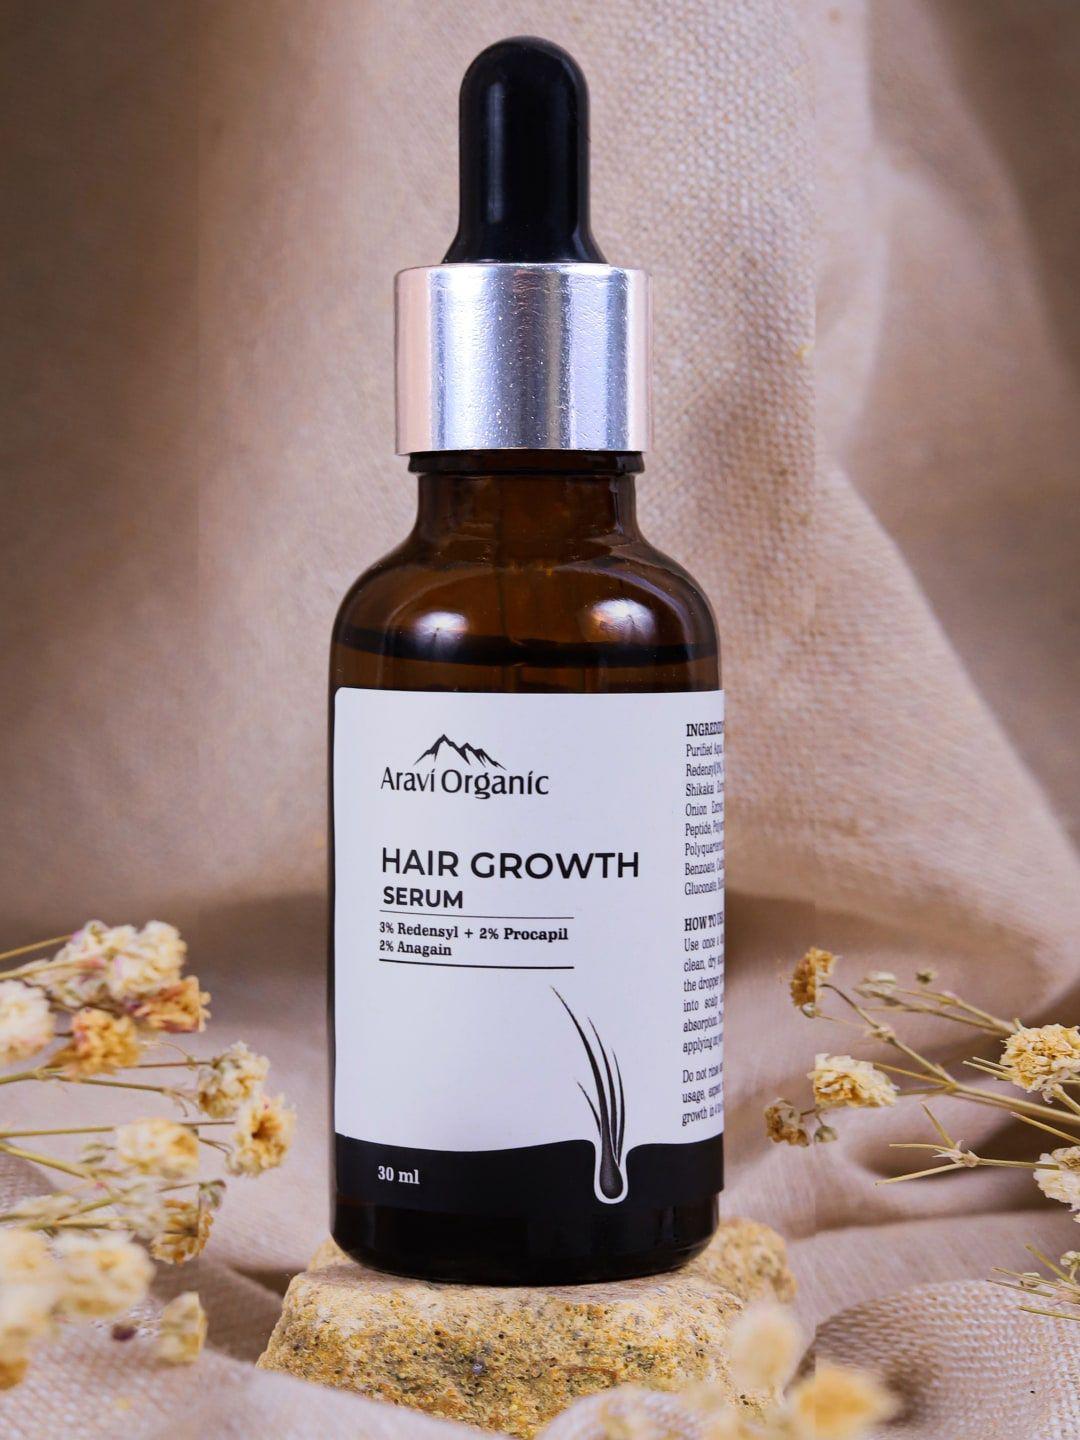 aravi organic redensyl 3% + anagain 2% advanced hair growth serum 30ml